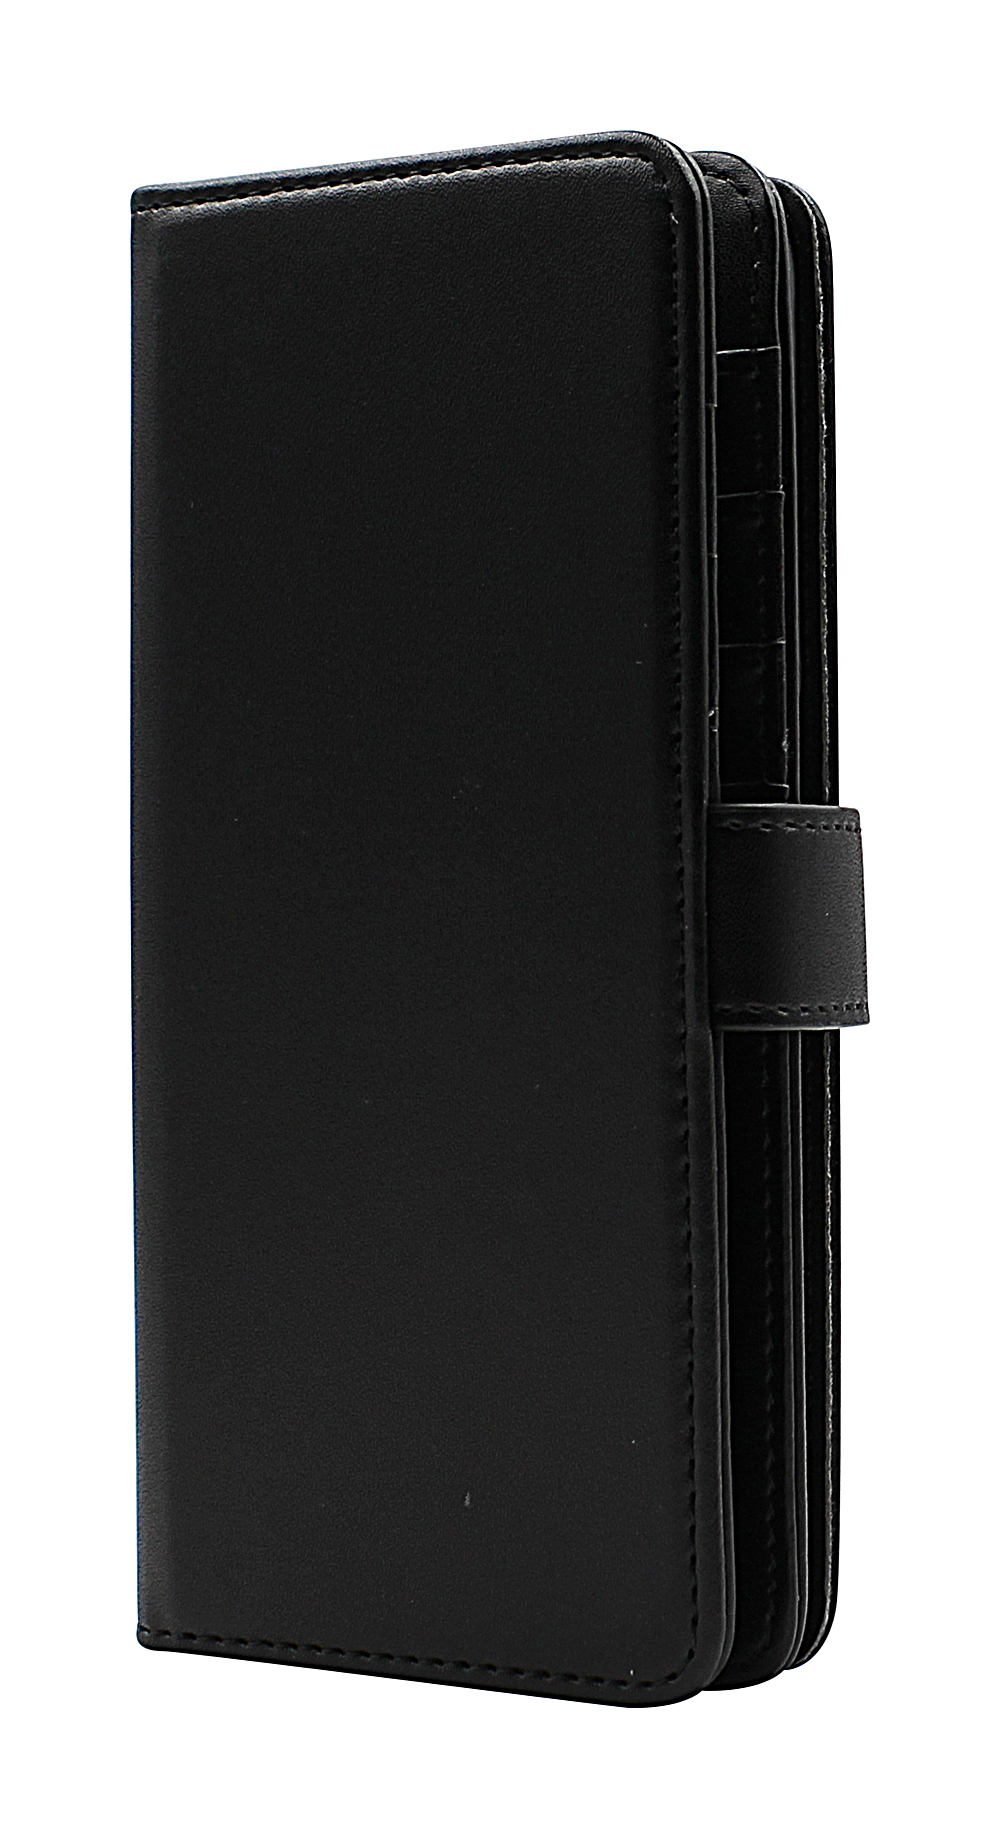 Skimblocker XL Wallet OnePlus Nord CE 5G